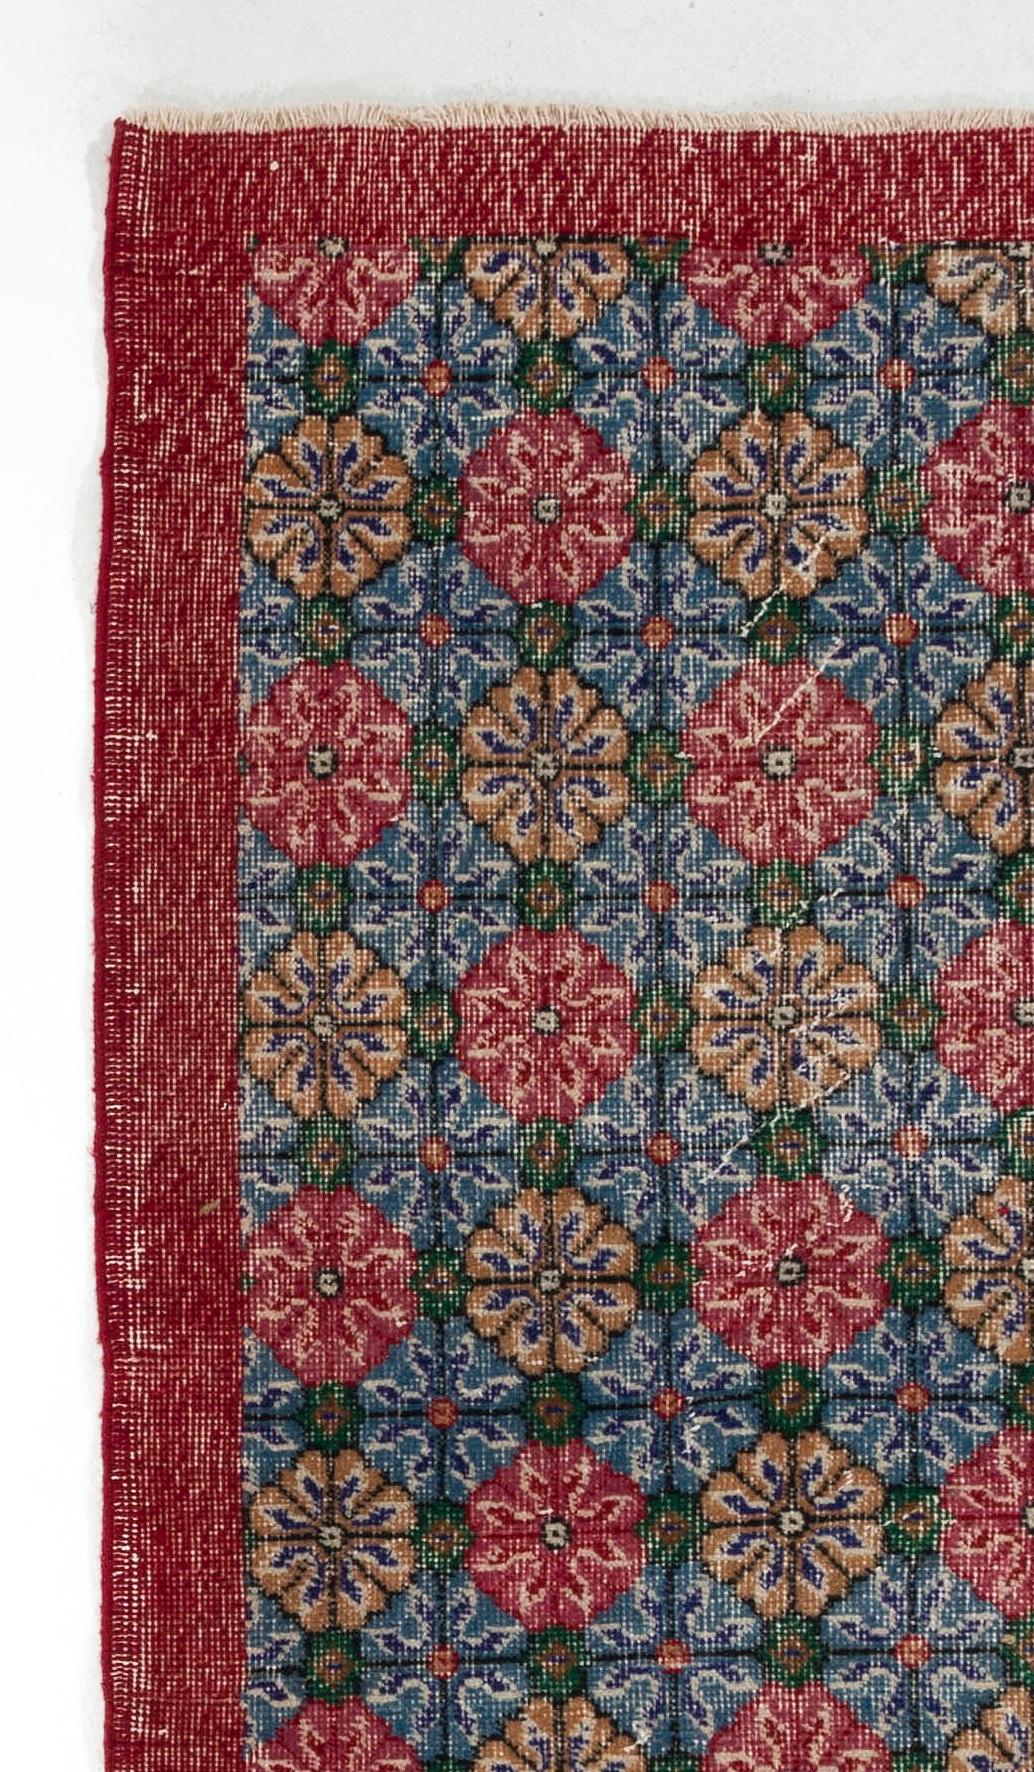 Dieser handgeknüpfte türkische Teppich im Vintage-Stil zeichnet sich durch ein Allover-Muster aus kaleidoskopischen Blumenköpfen in Rot, Gold, Blau und Grün in seinem Feld und einer einfarbigen Hauptbordüre in Rot aus.

Der Teppich hat einen